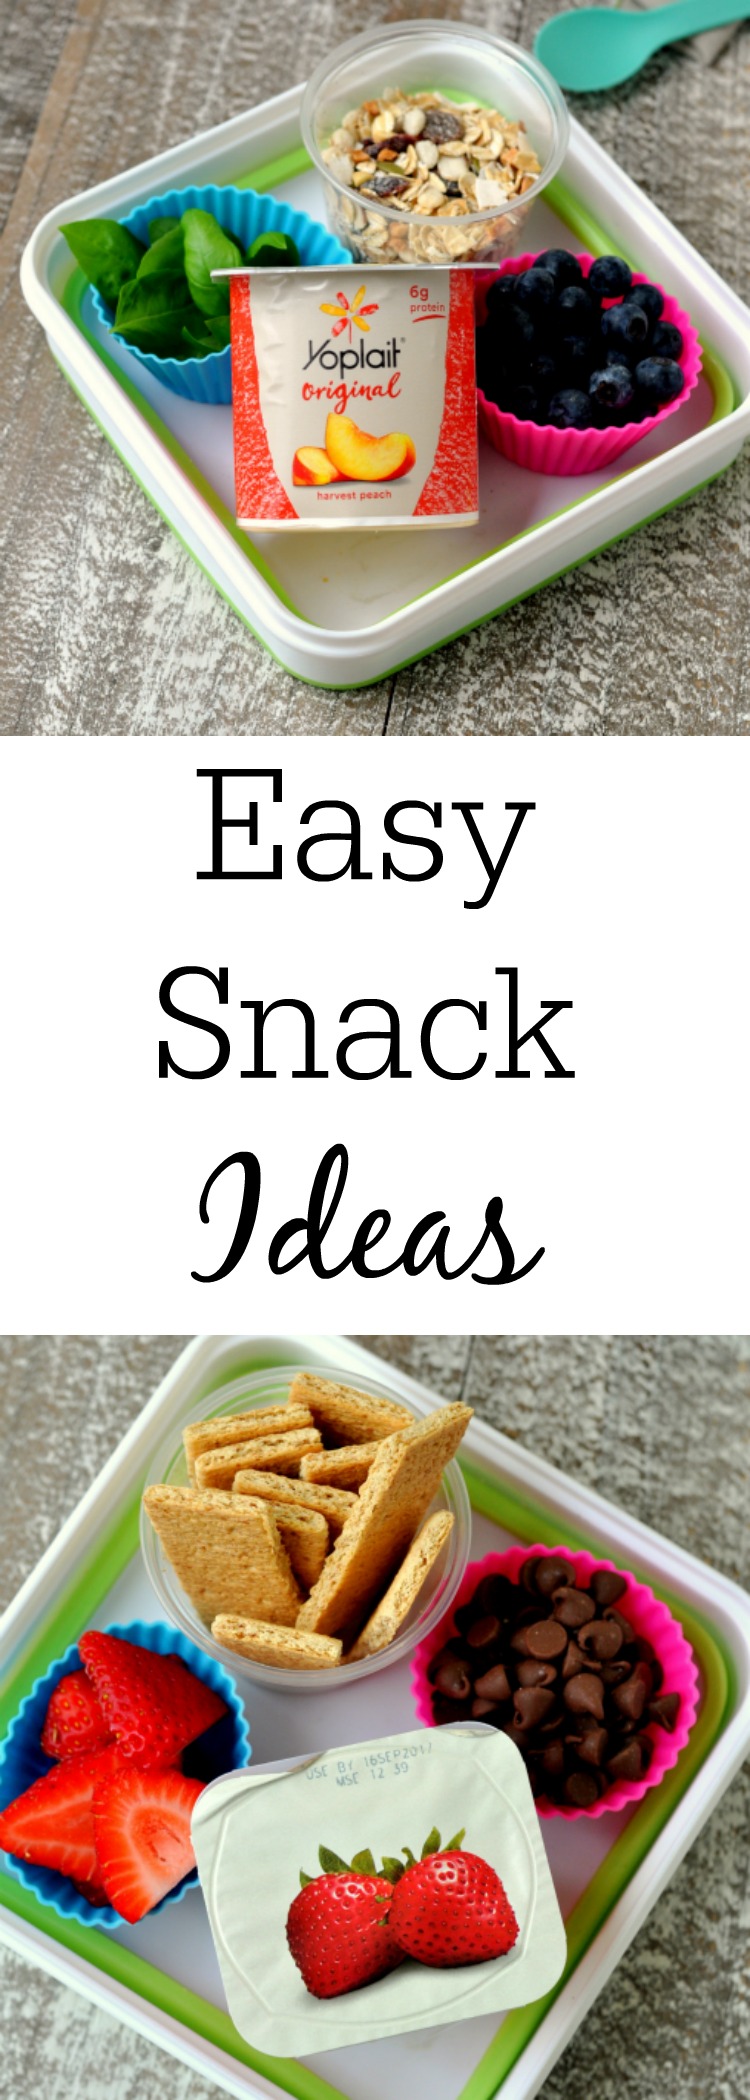 Easy Snack Ideas